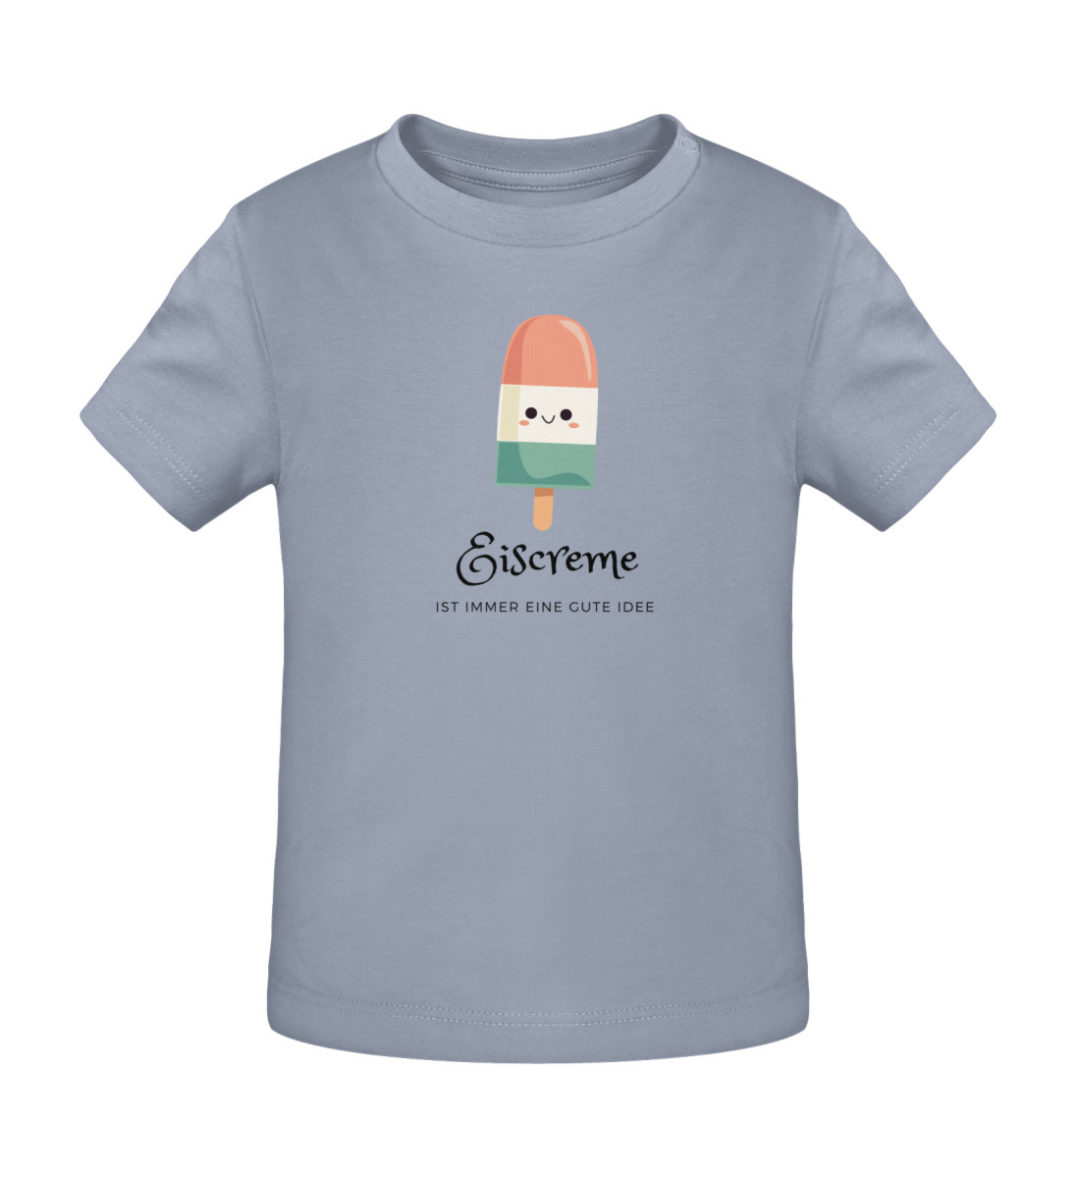 Eiscreme ist immer eine gute Idee - Baby Creator T-Shirt ST/ST-7086